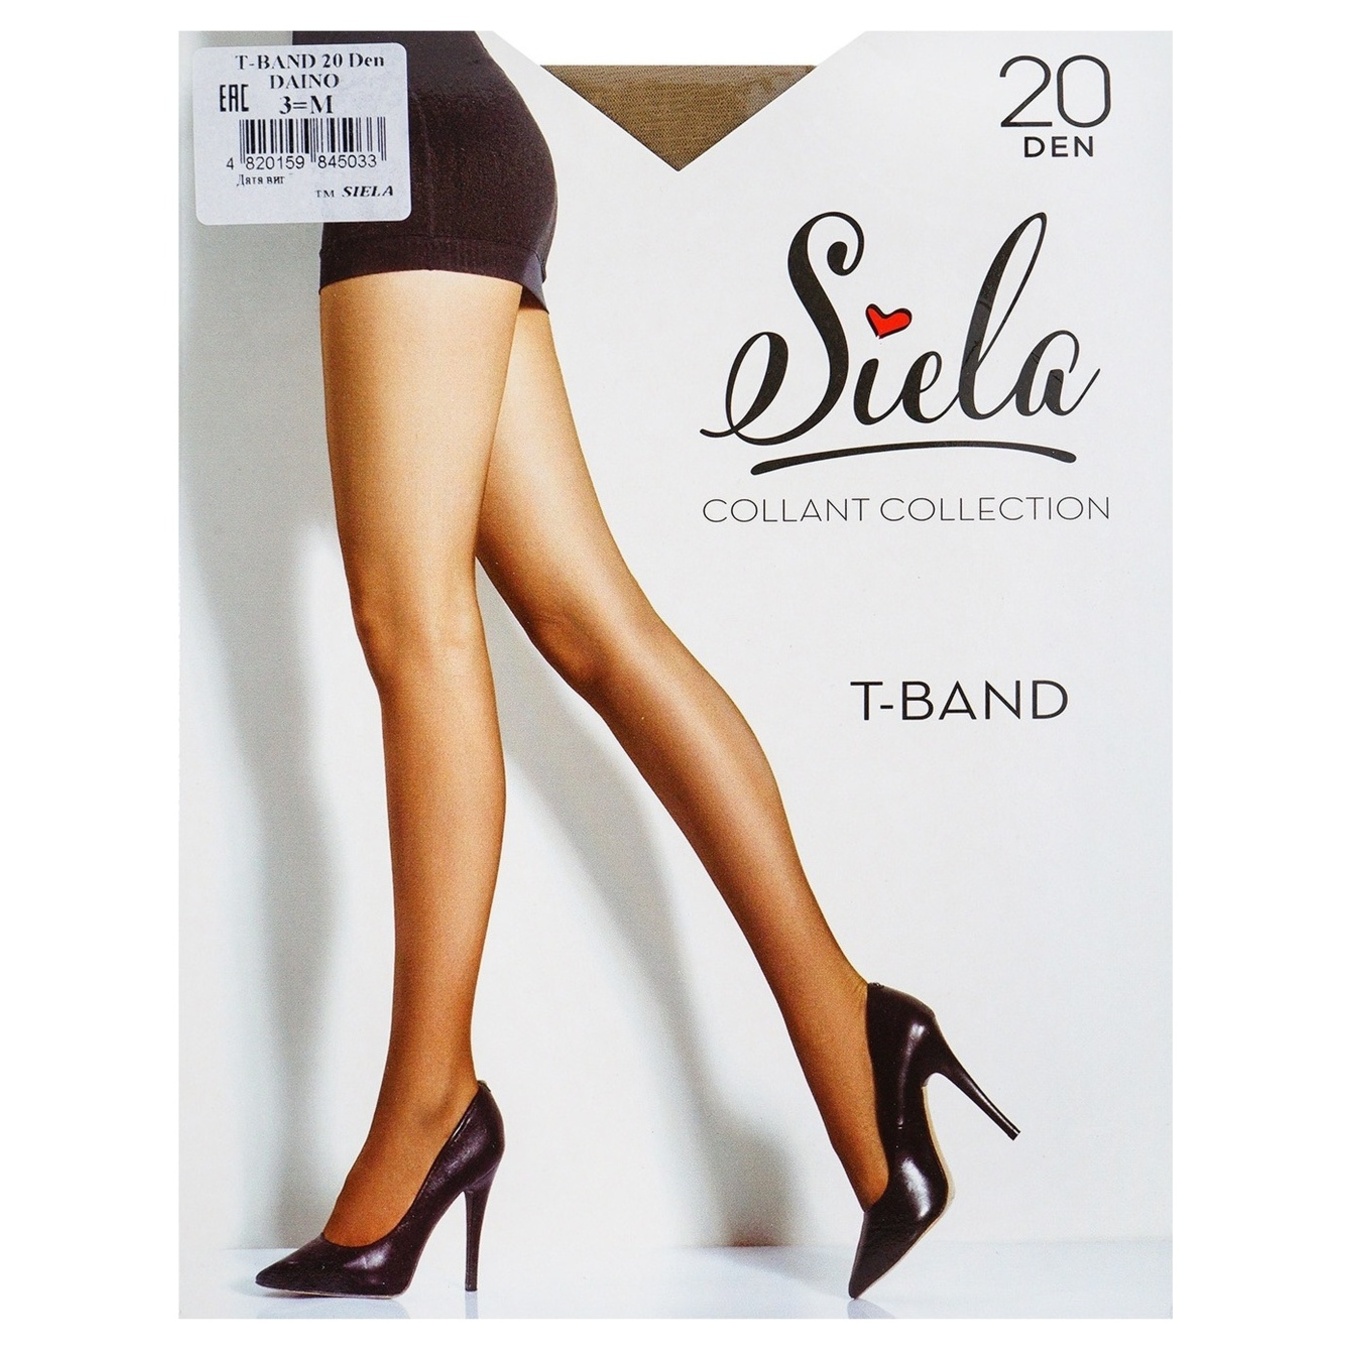 Women's tights Siela T-Band 20 days daino size 3